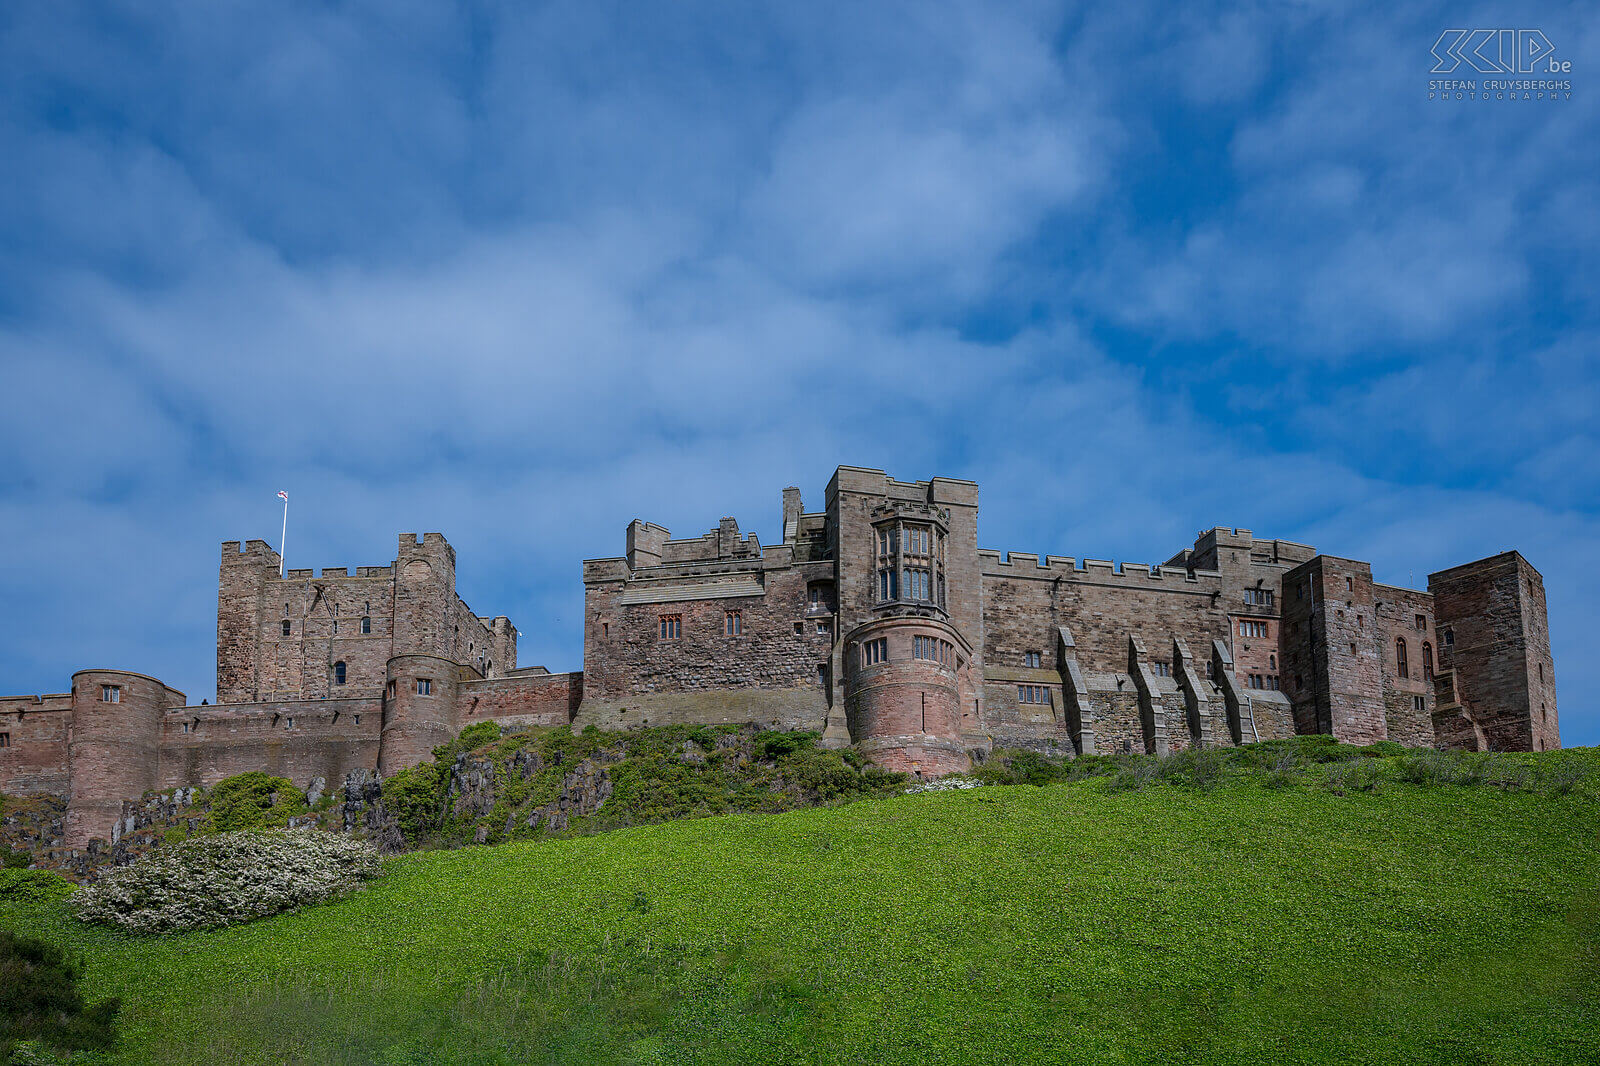 Bamburgh Castle Bamburgh Castle is een indrukwekkend twaalfde-eeuws kasteel gelegen aan de kust in Bamburgh vlak bij Seahouses aan de Engelse Northumberland kust. Het kasteel is ook te zien geweest in tal van televisieprogramma's en films en in de serie The Last Kingdom. Stefan Cruysberghs